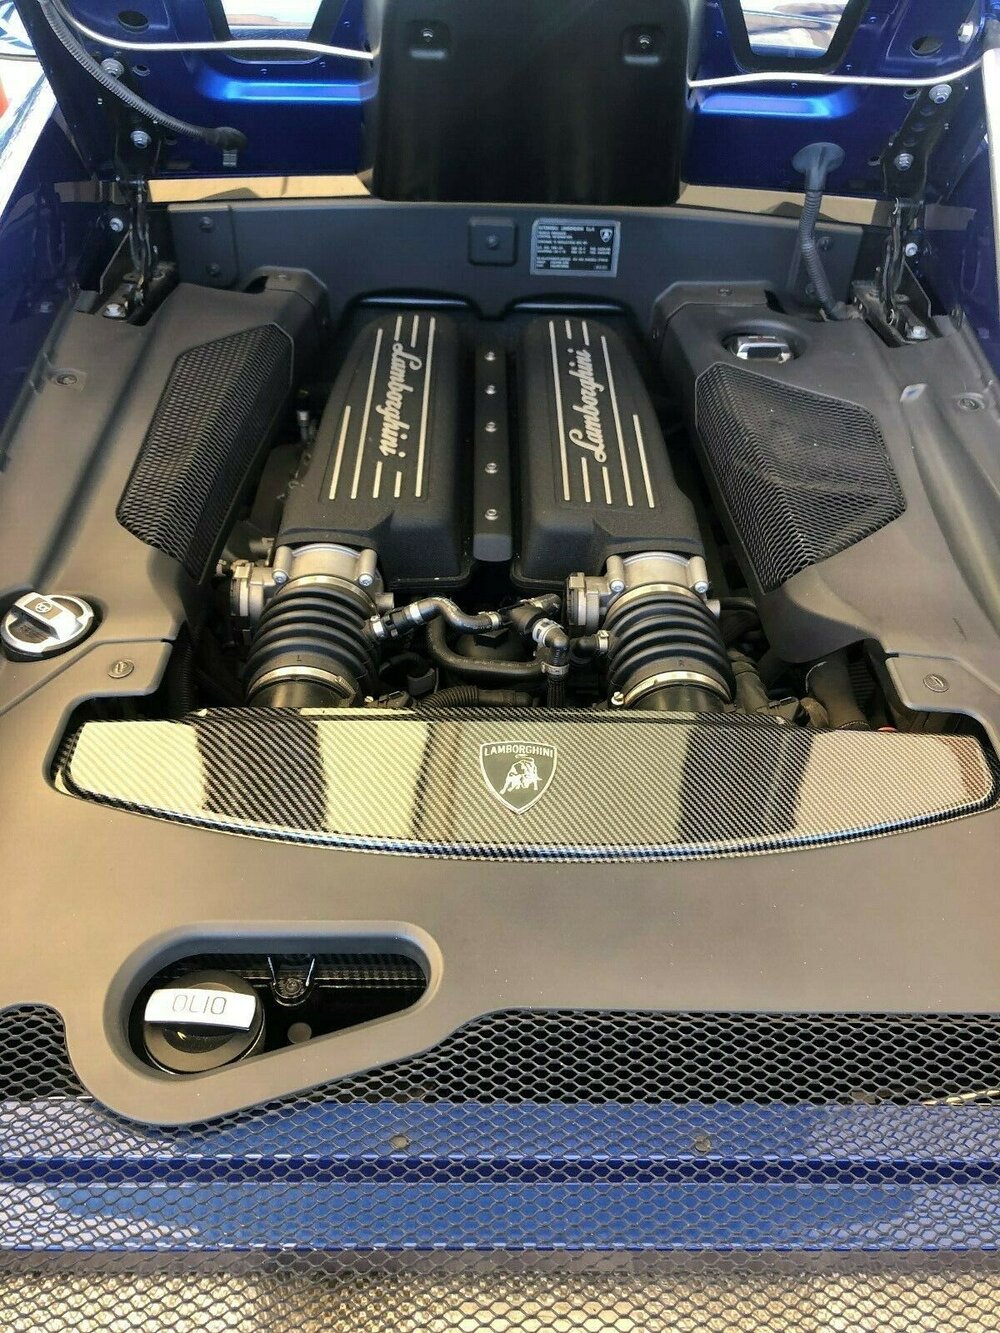 Audi R8, Lamborghini Huracan Button Box with iFlag